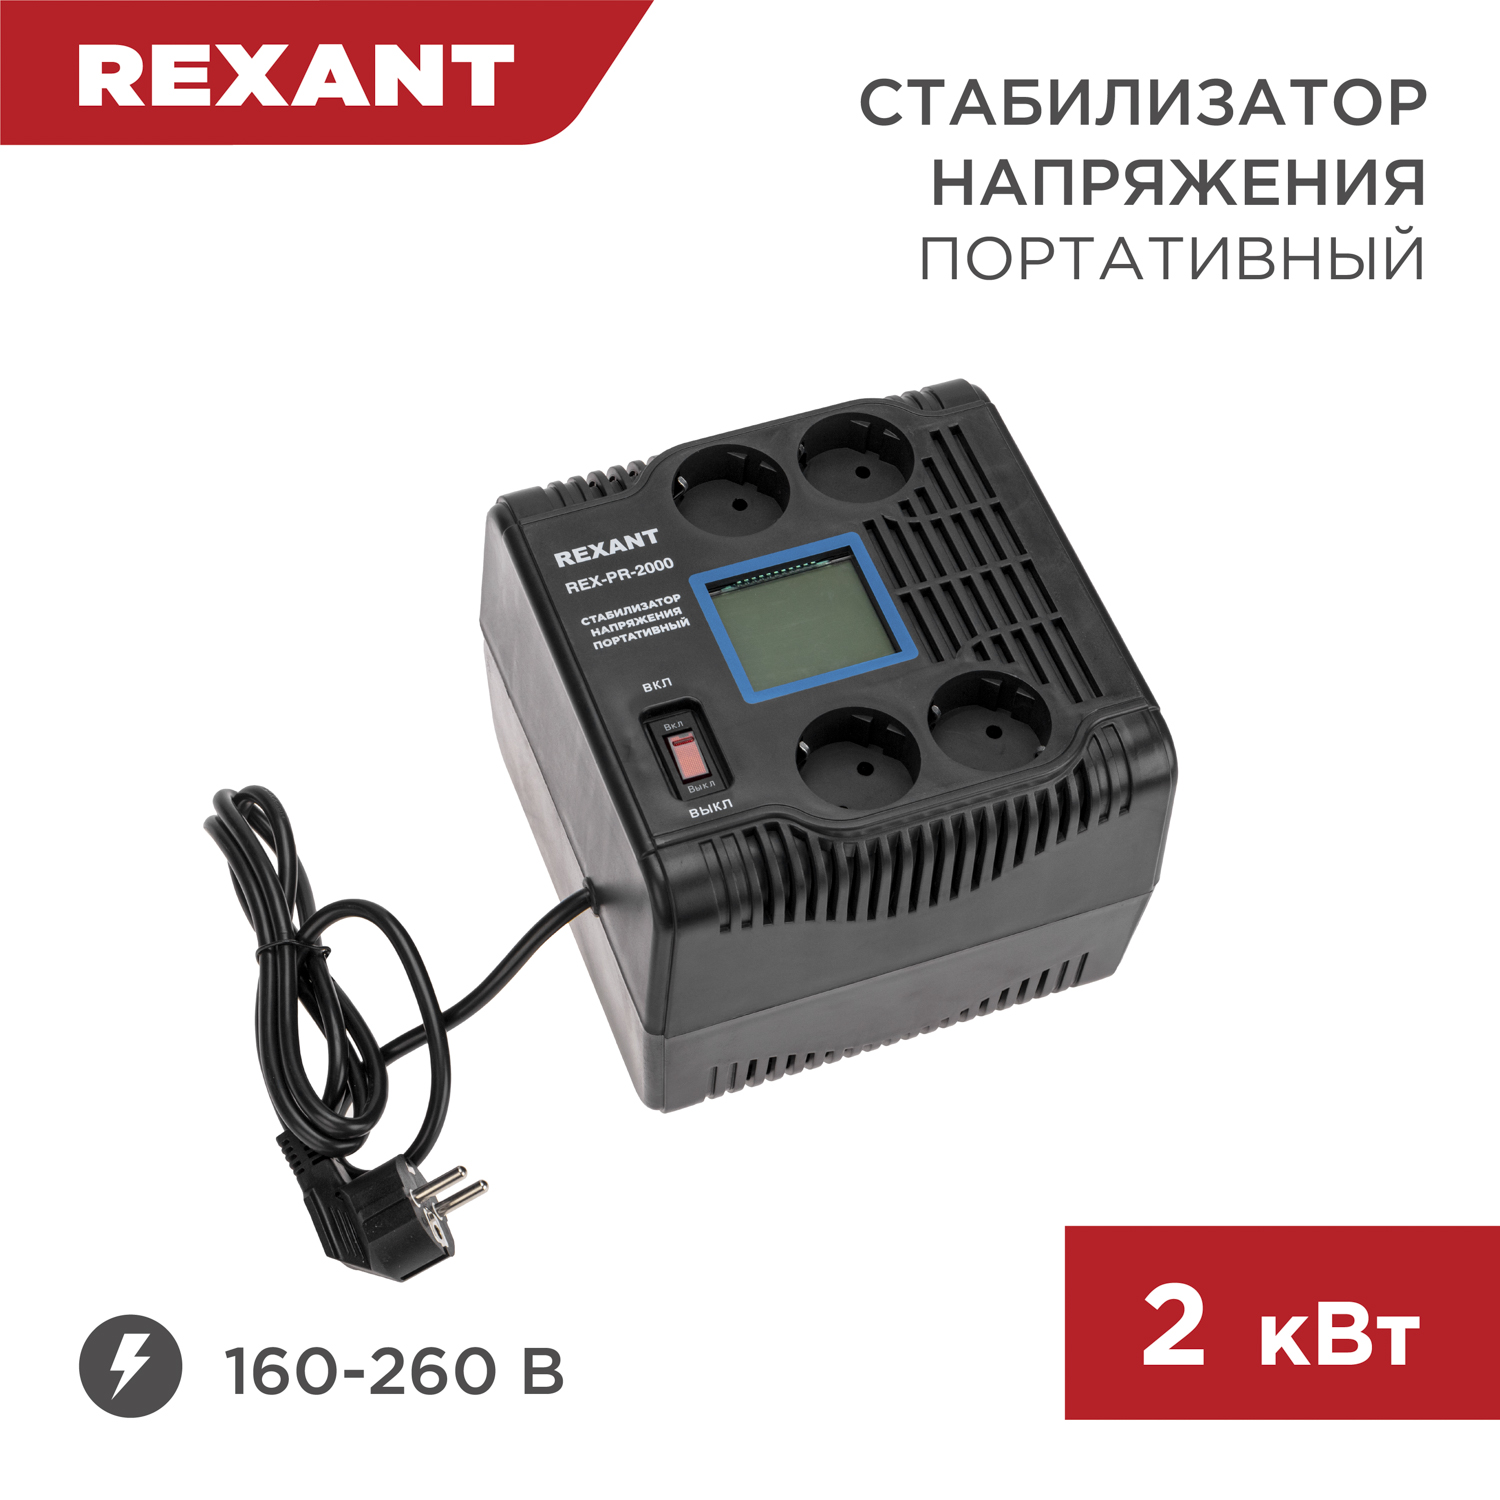 Стабилизатор напряжения портативный REXANT REX-PR-2000 11-5032 стабилизатор напряжения портативный rexant rex pr 1500 11 5031